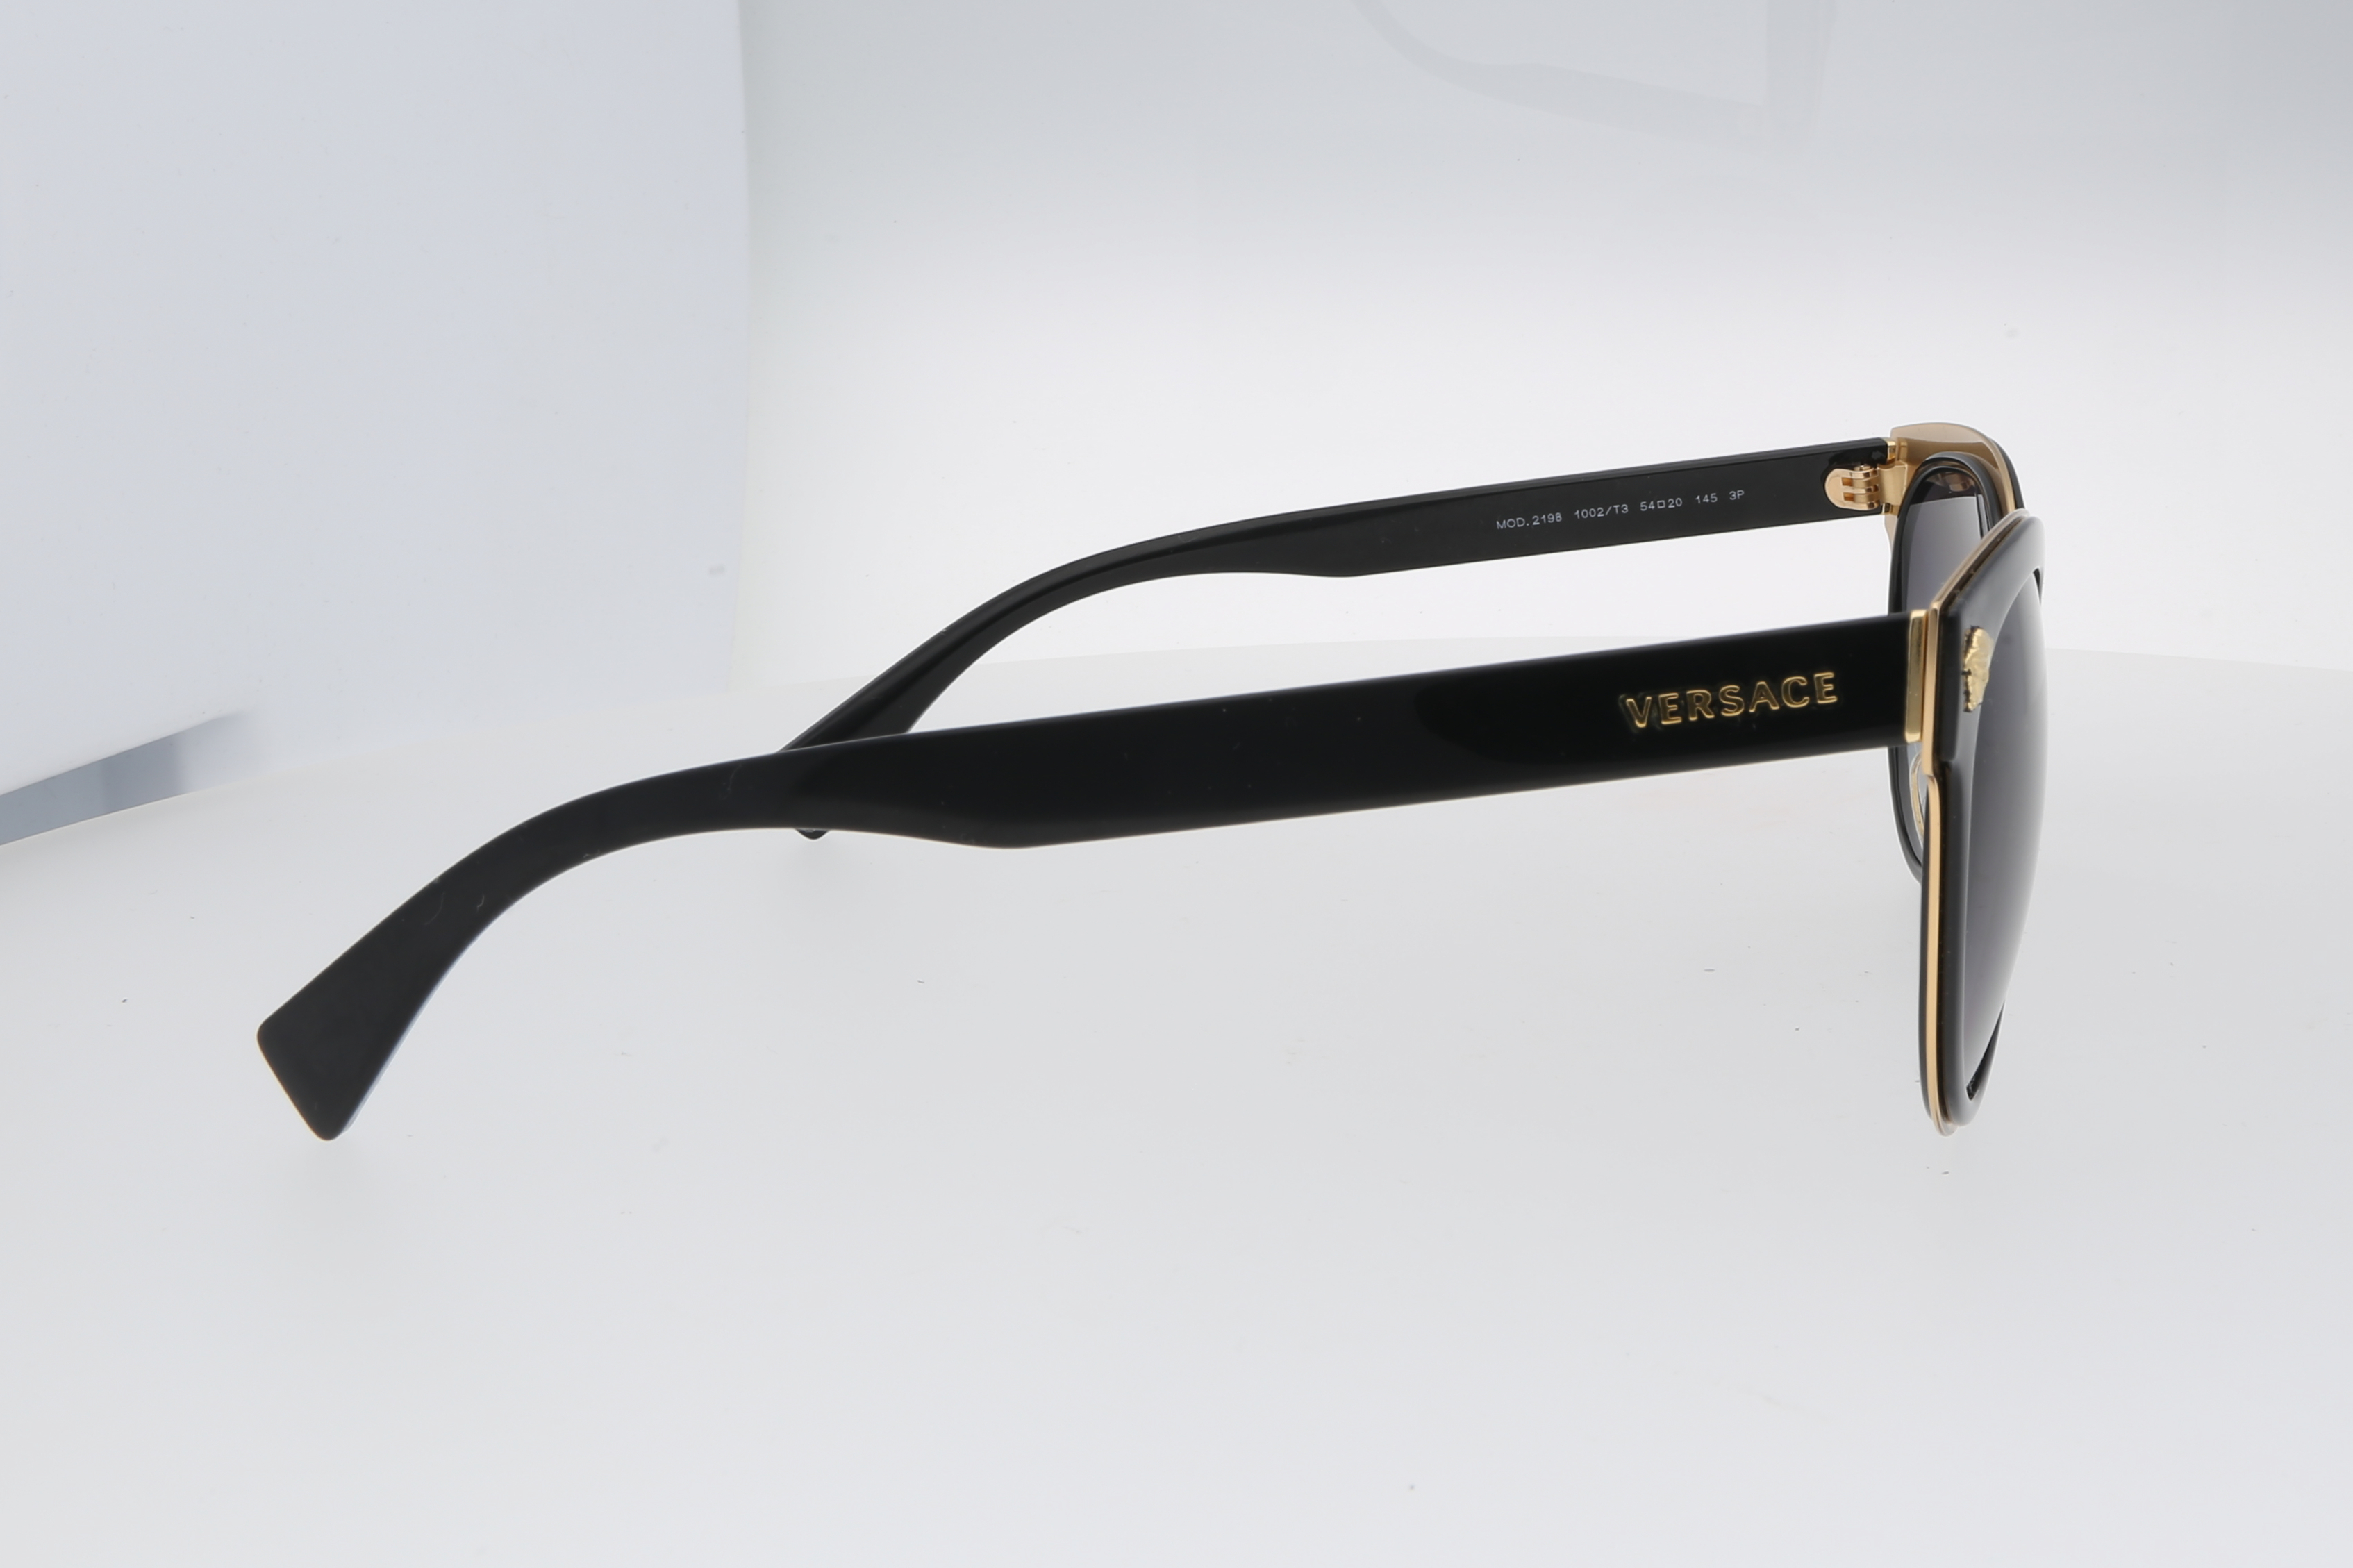 Second Hand Designer Sonnenbrille jetzt online kaufen auf kaleaz.